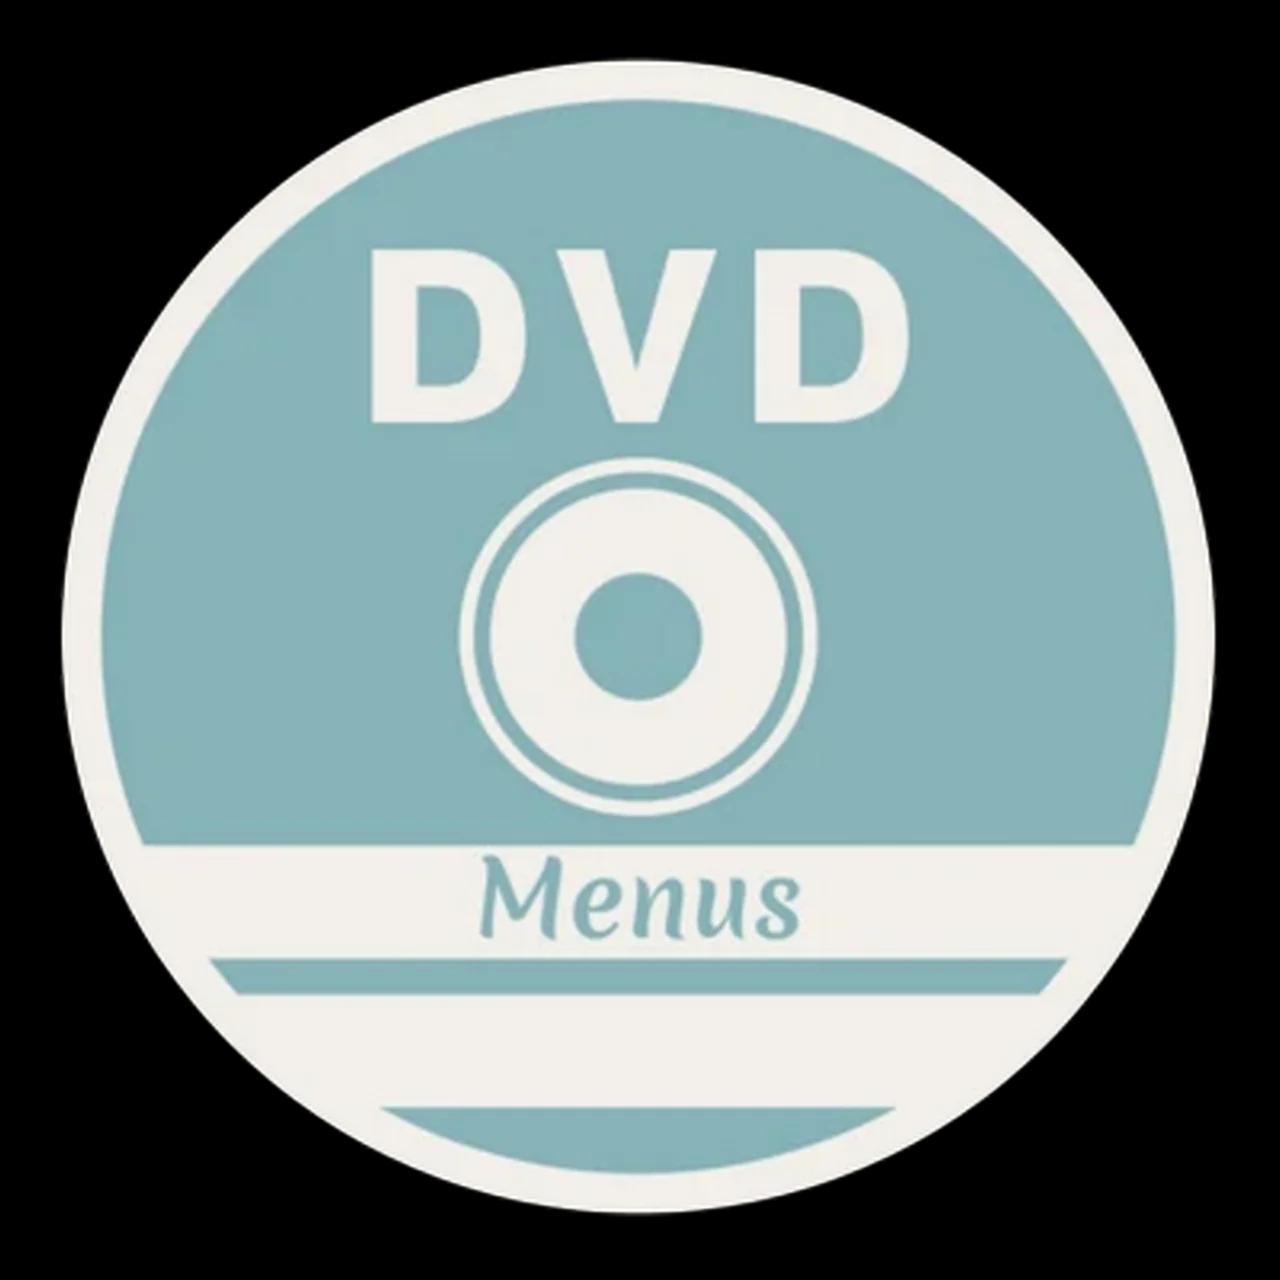 dvd-menus